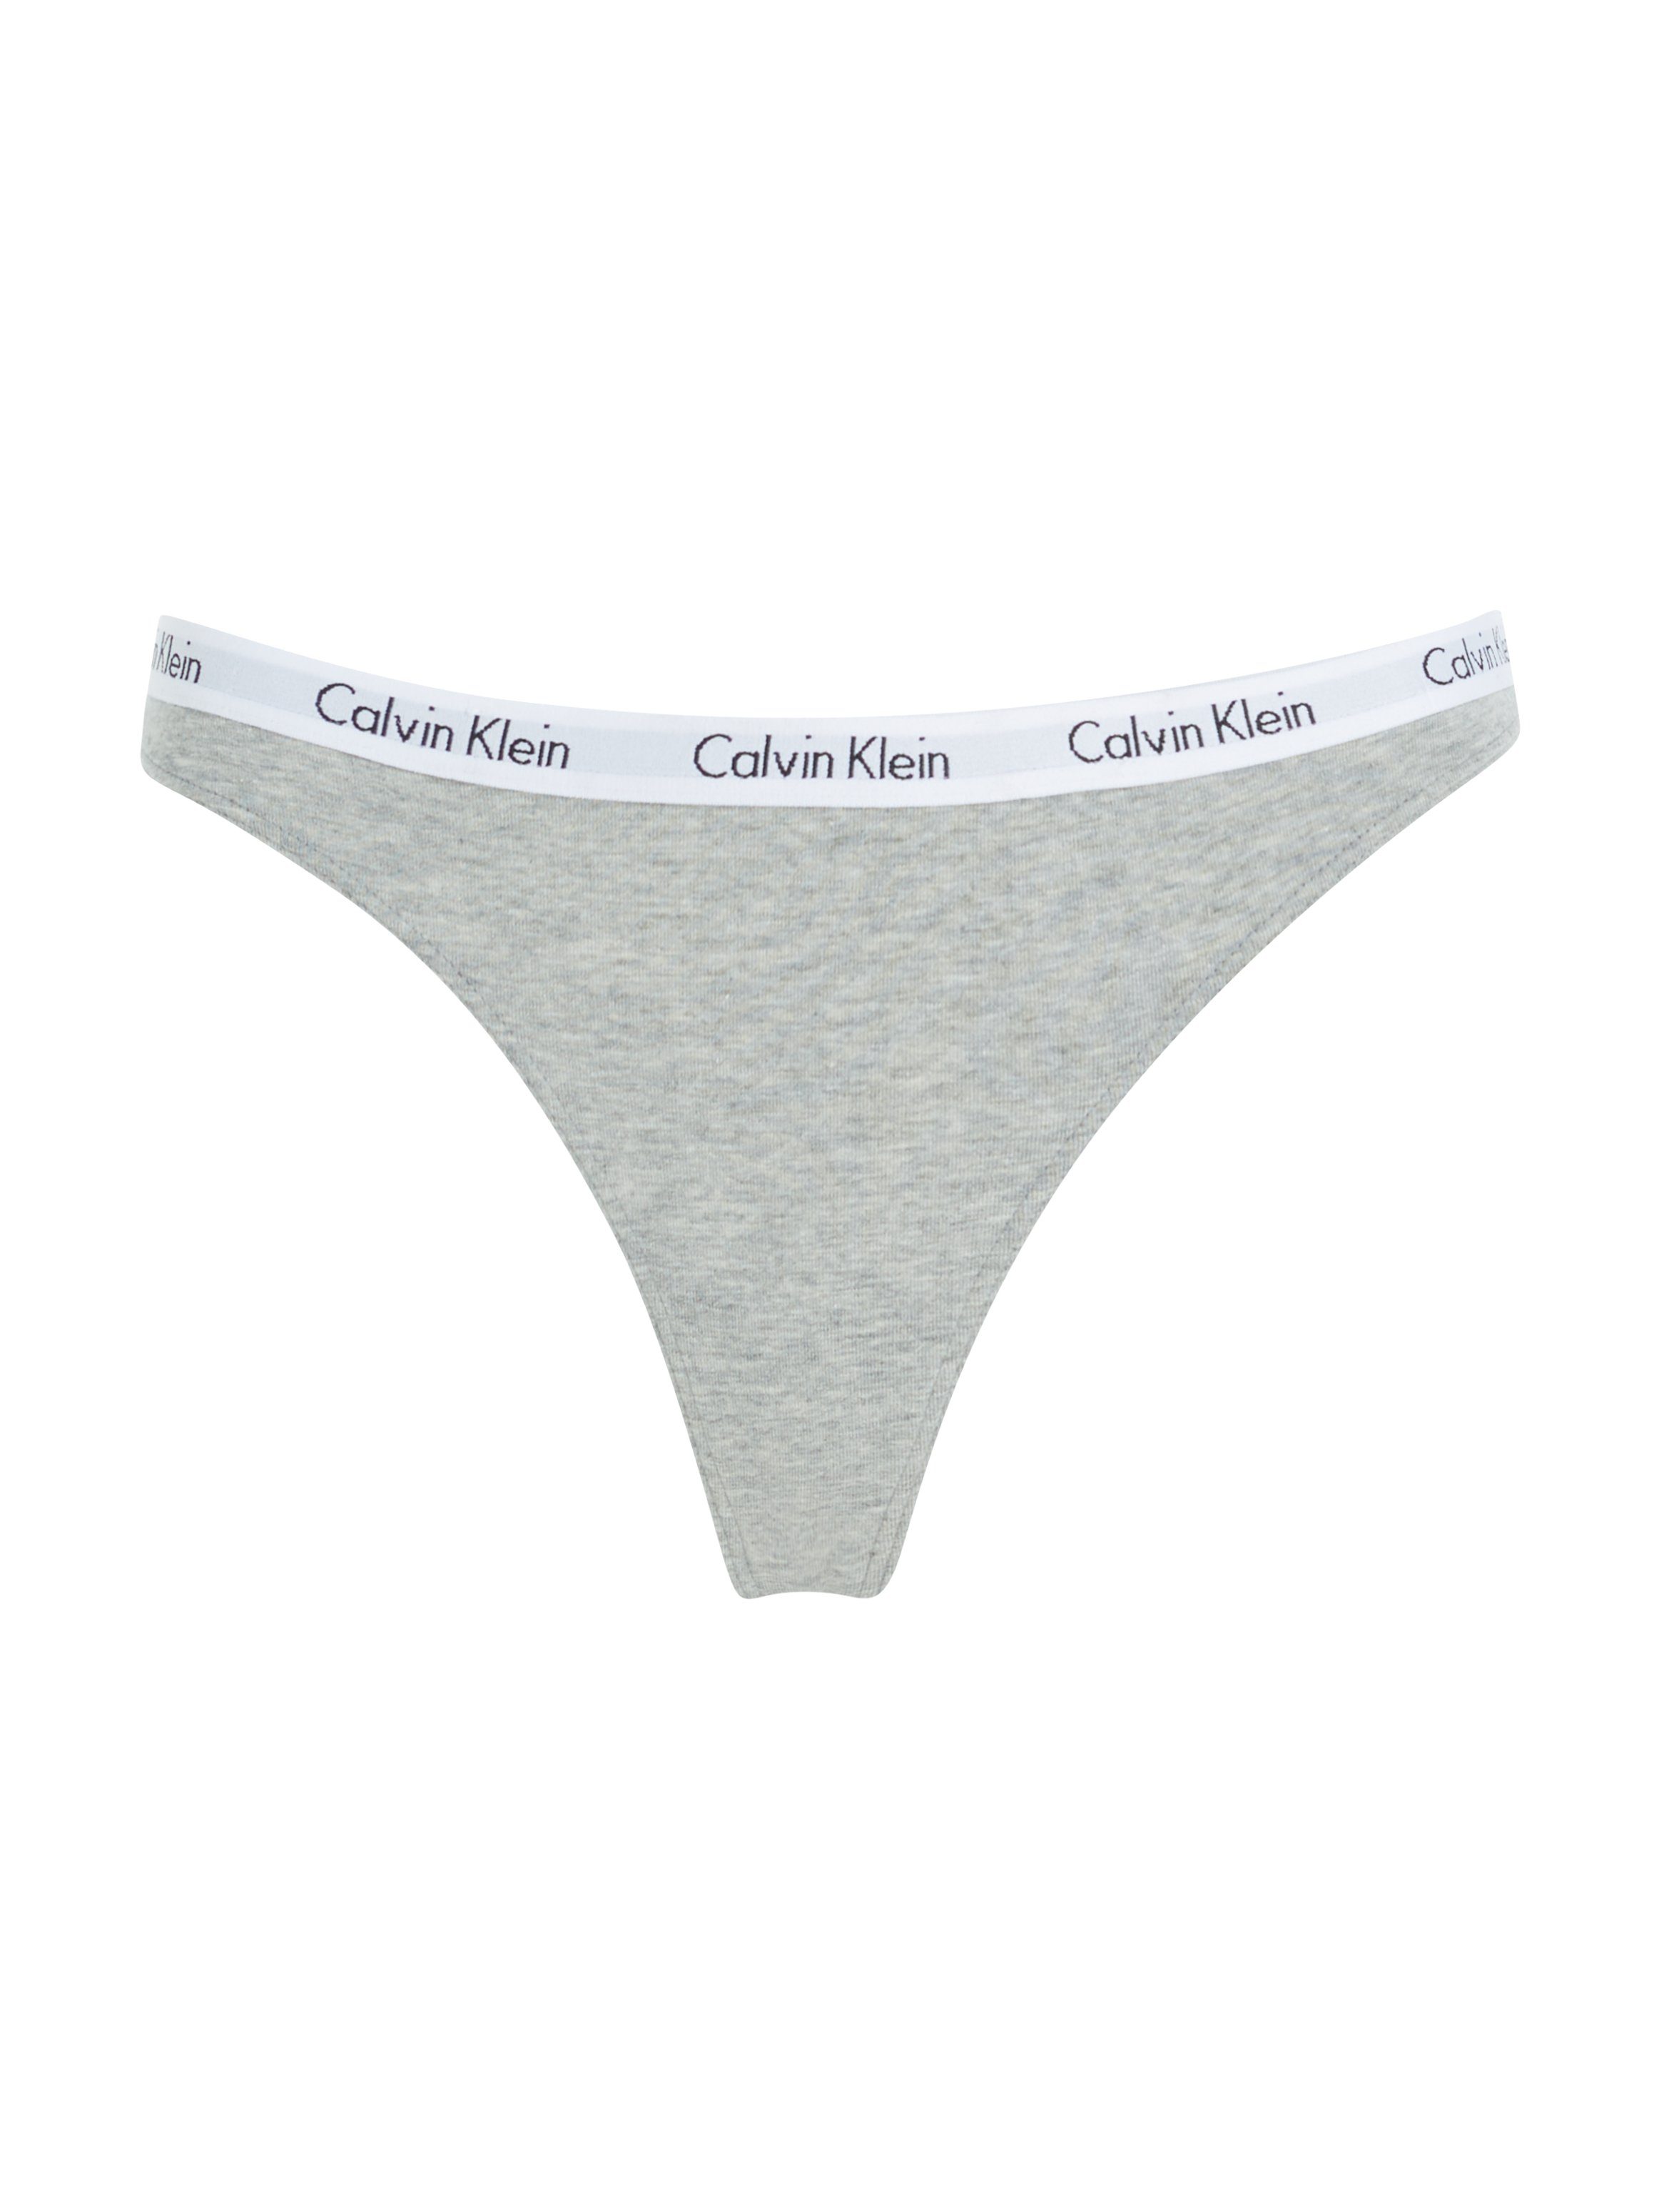 Klein mit Underwear T-String Logobund grau Calvin klassischem